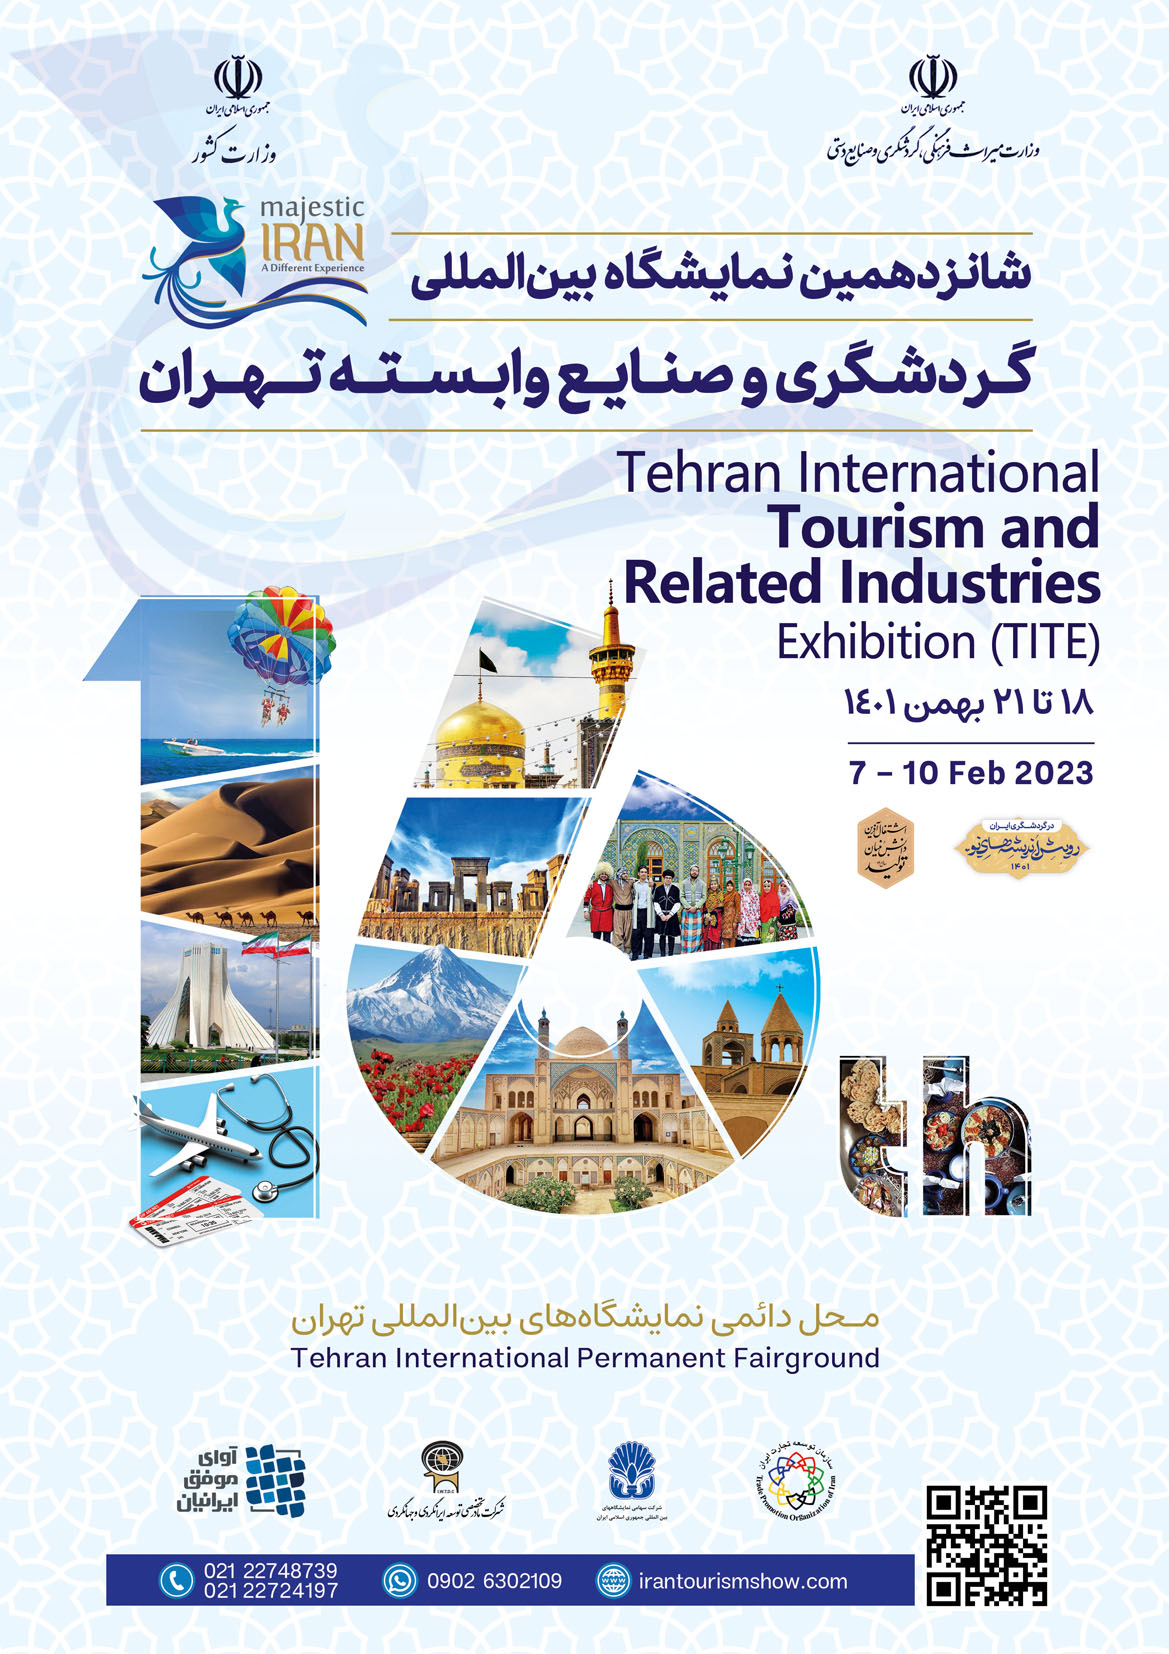 هنرمندان و فعالان گردشگری اصفهان در نمایشگاه حضور دارند/ 2200 متر غرفه نمایشگاهی یکپارچه برای نصف جهان